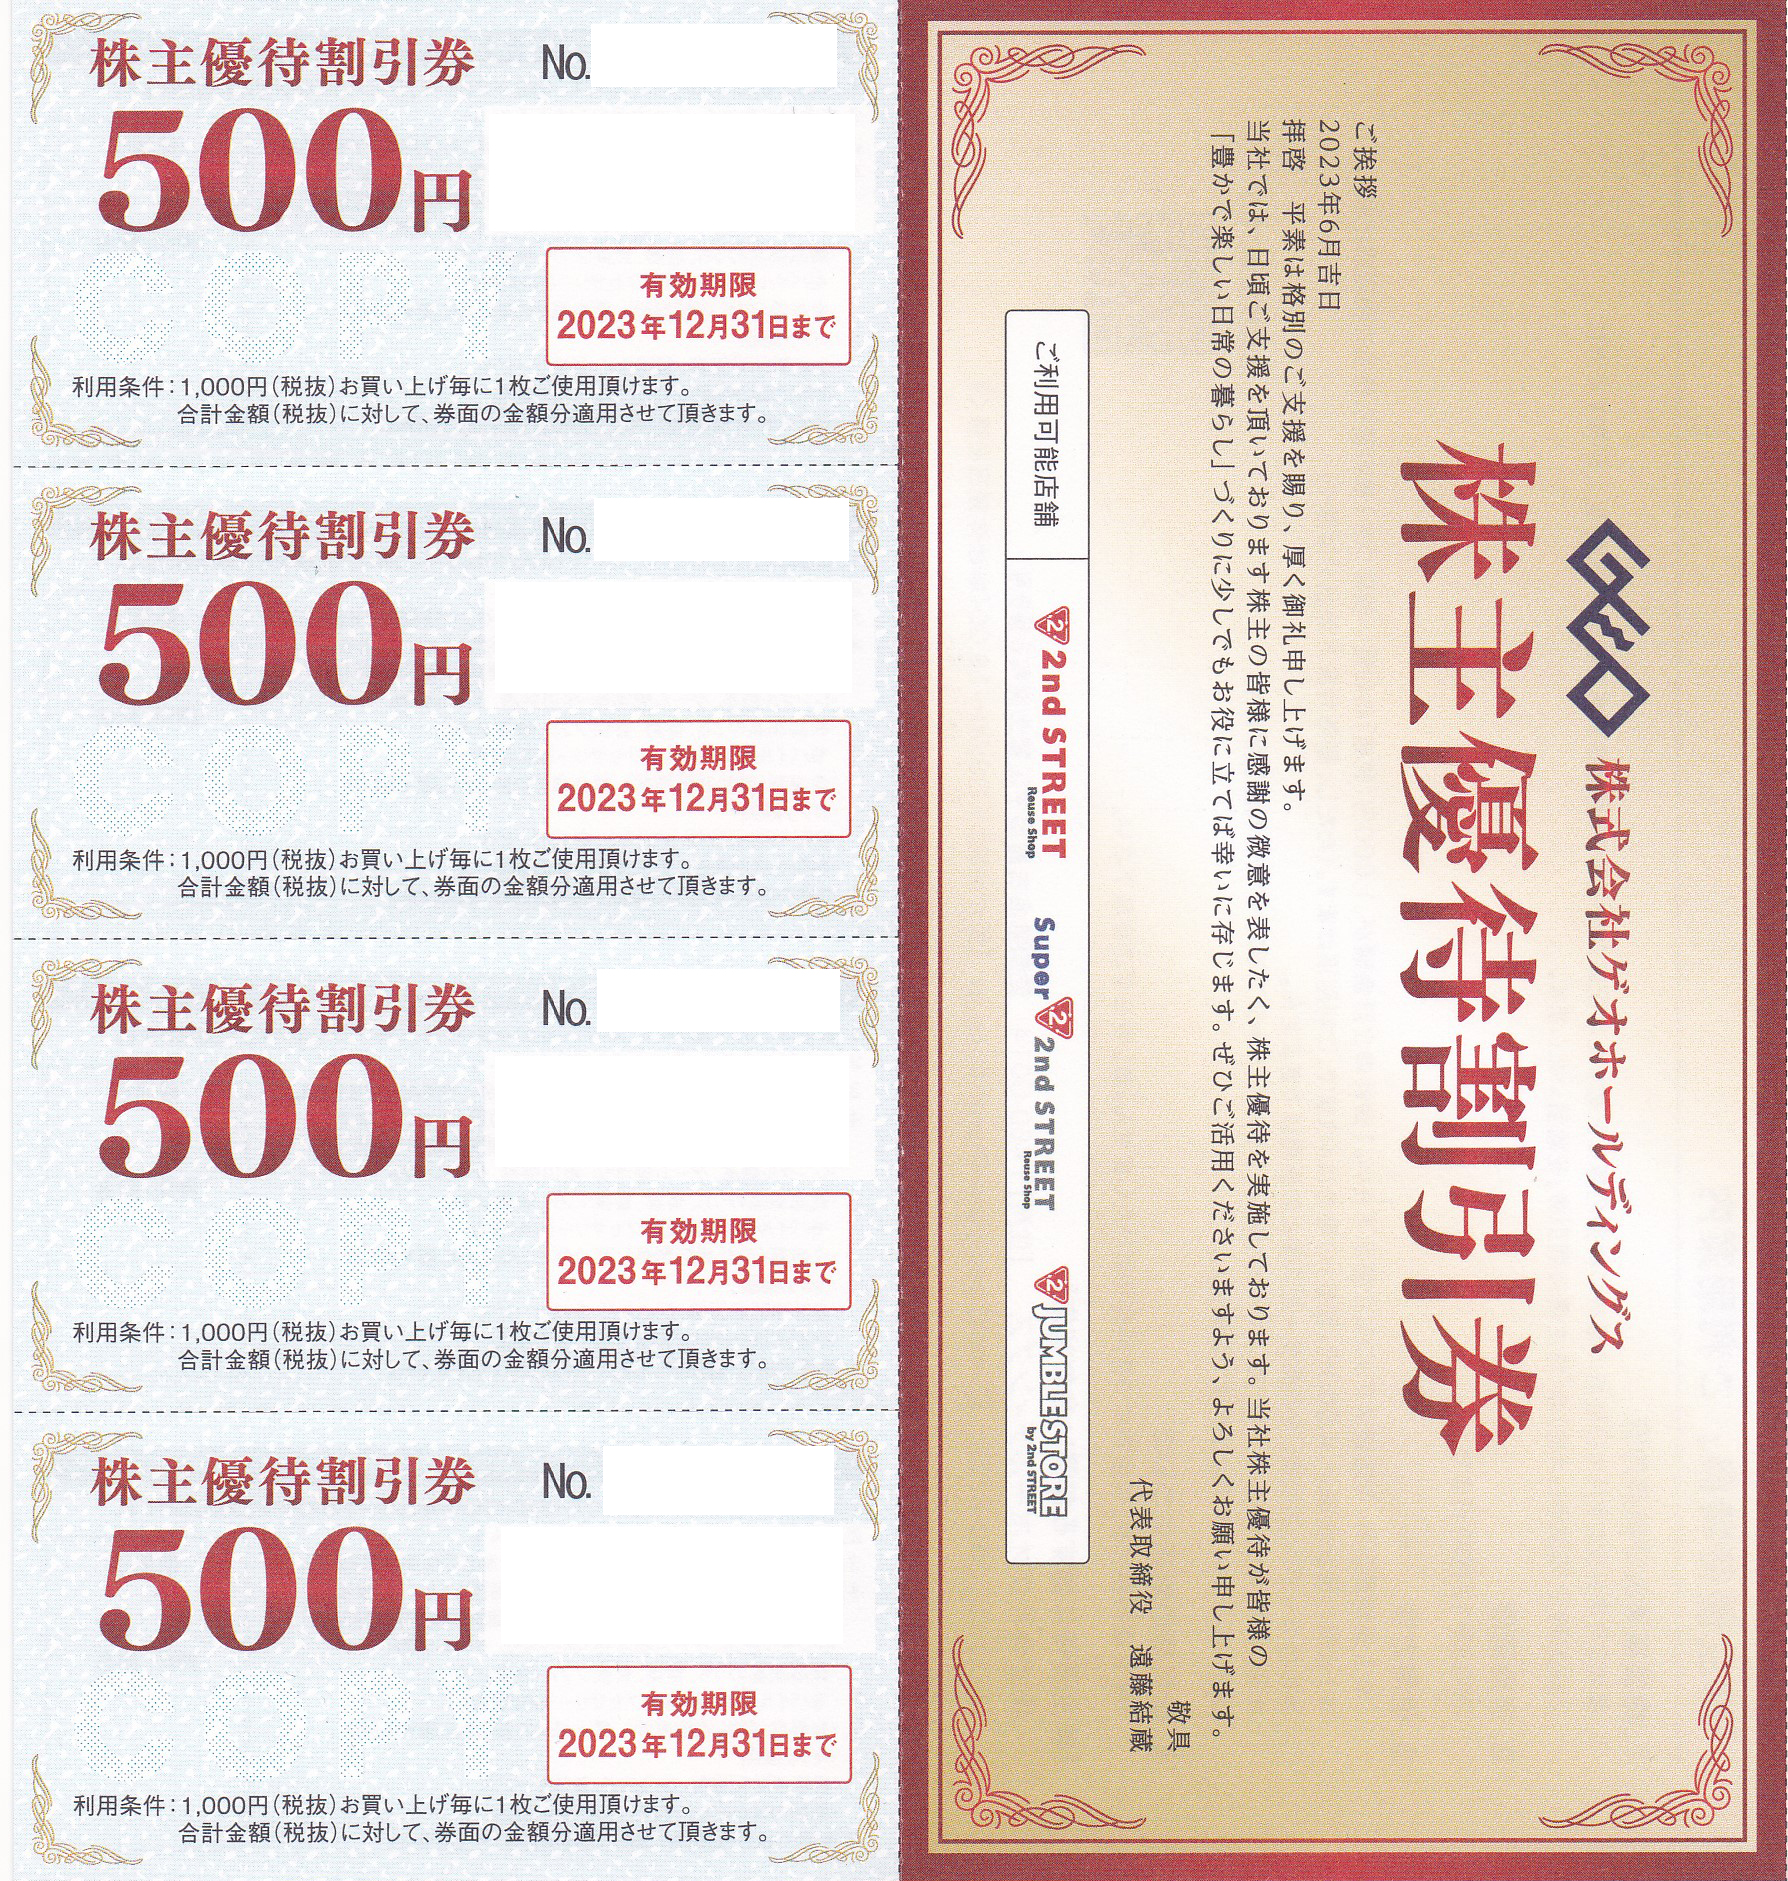 セカンドストリート(ゲオHD)株主優待券(500円割引券)(4枚綴)(2023.12.31)